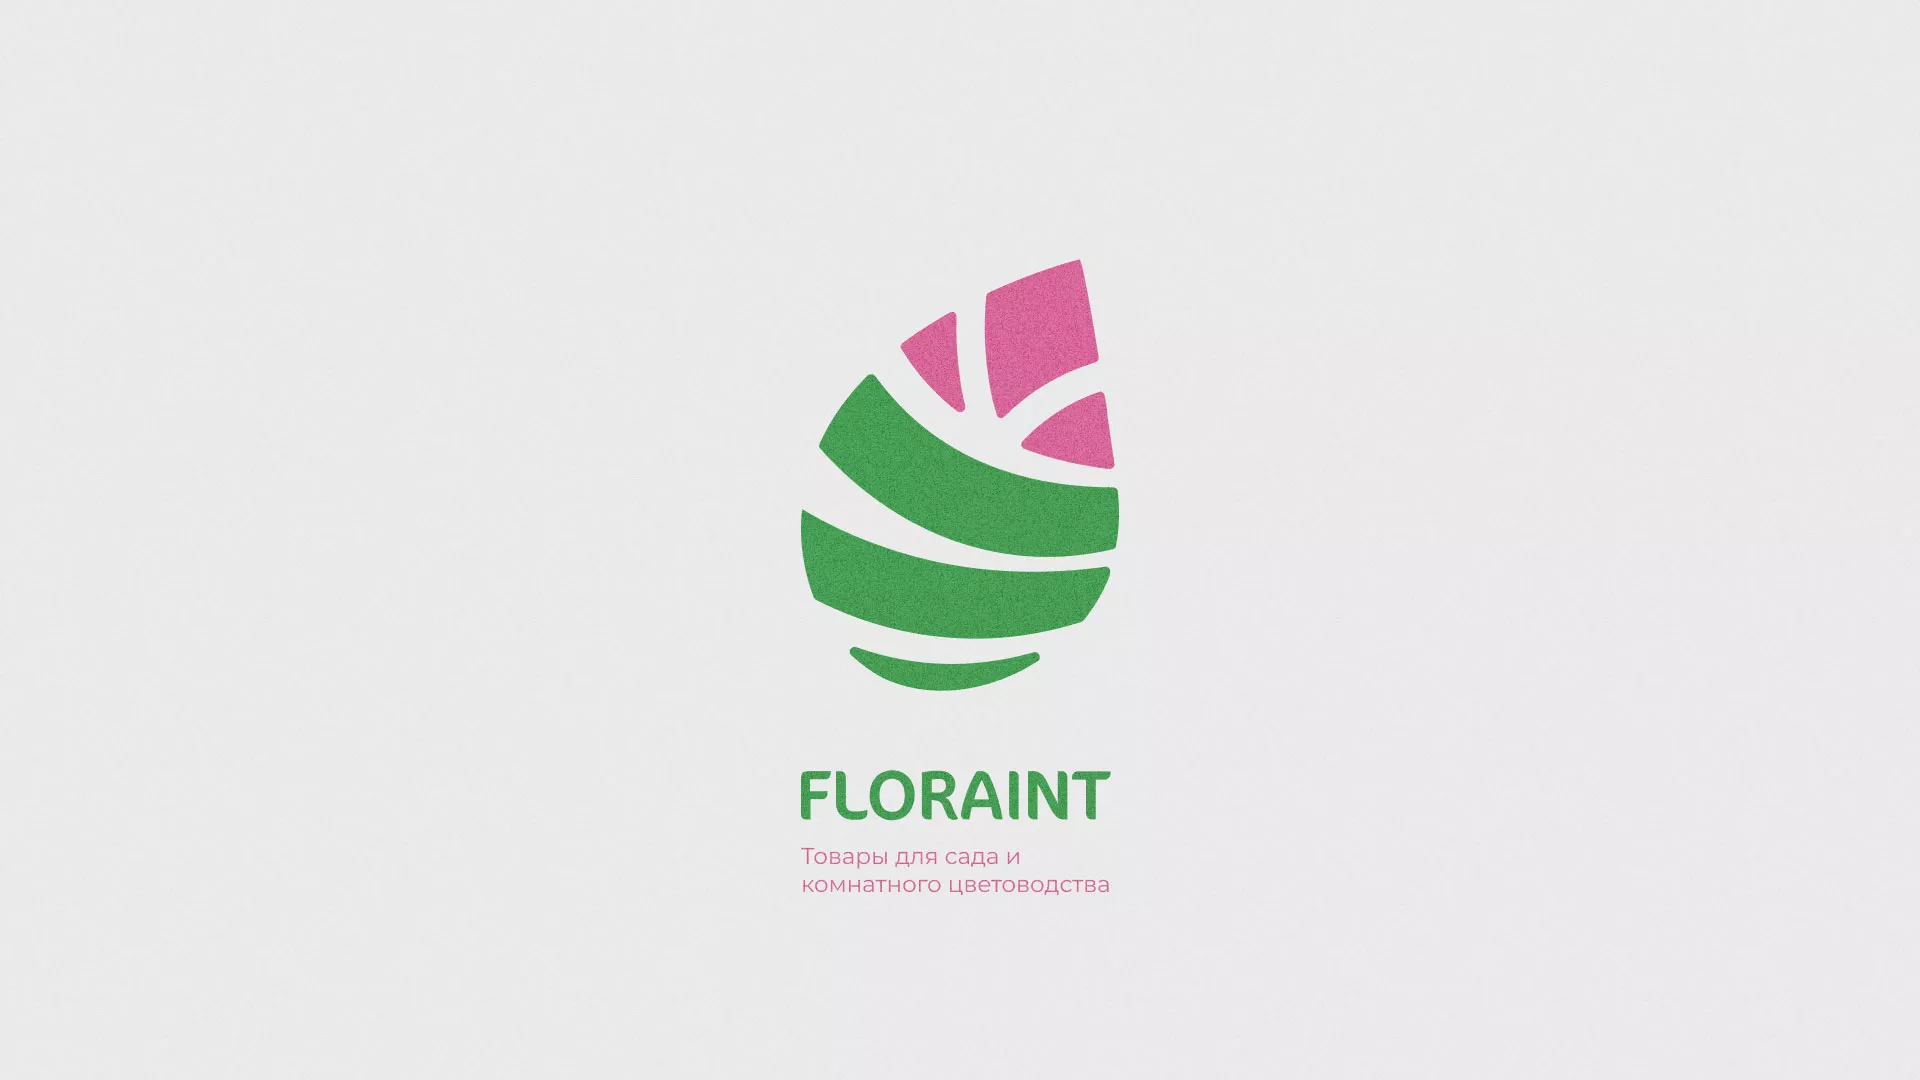 Разработка оформления профиля Instagram для магазина «Floraint» в Химках